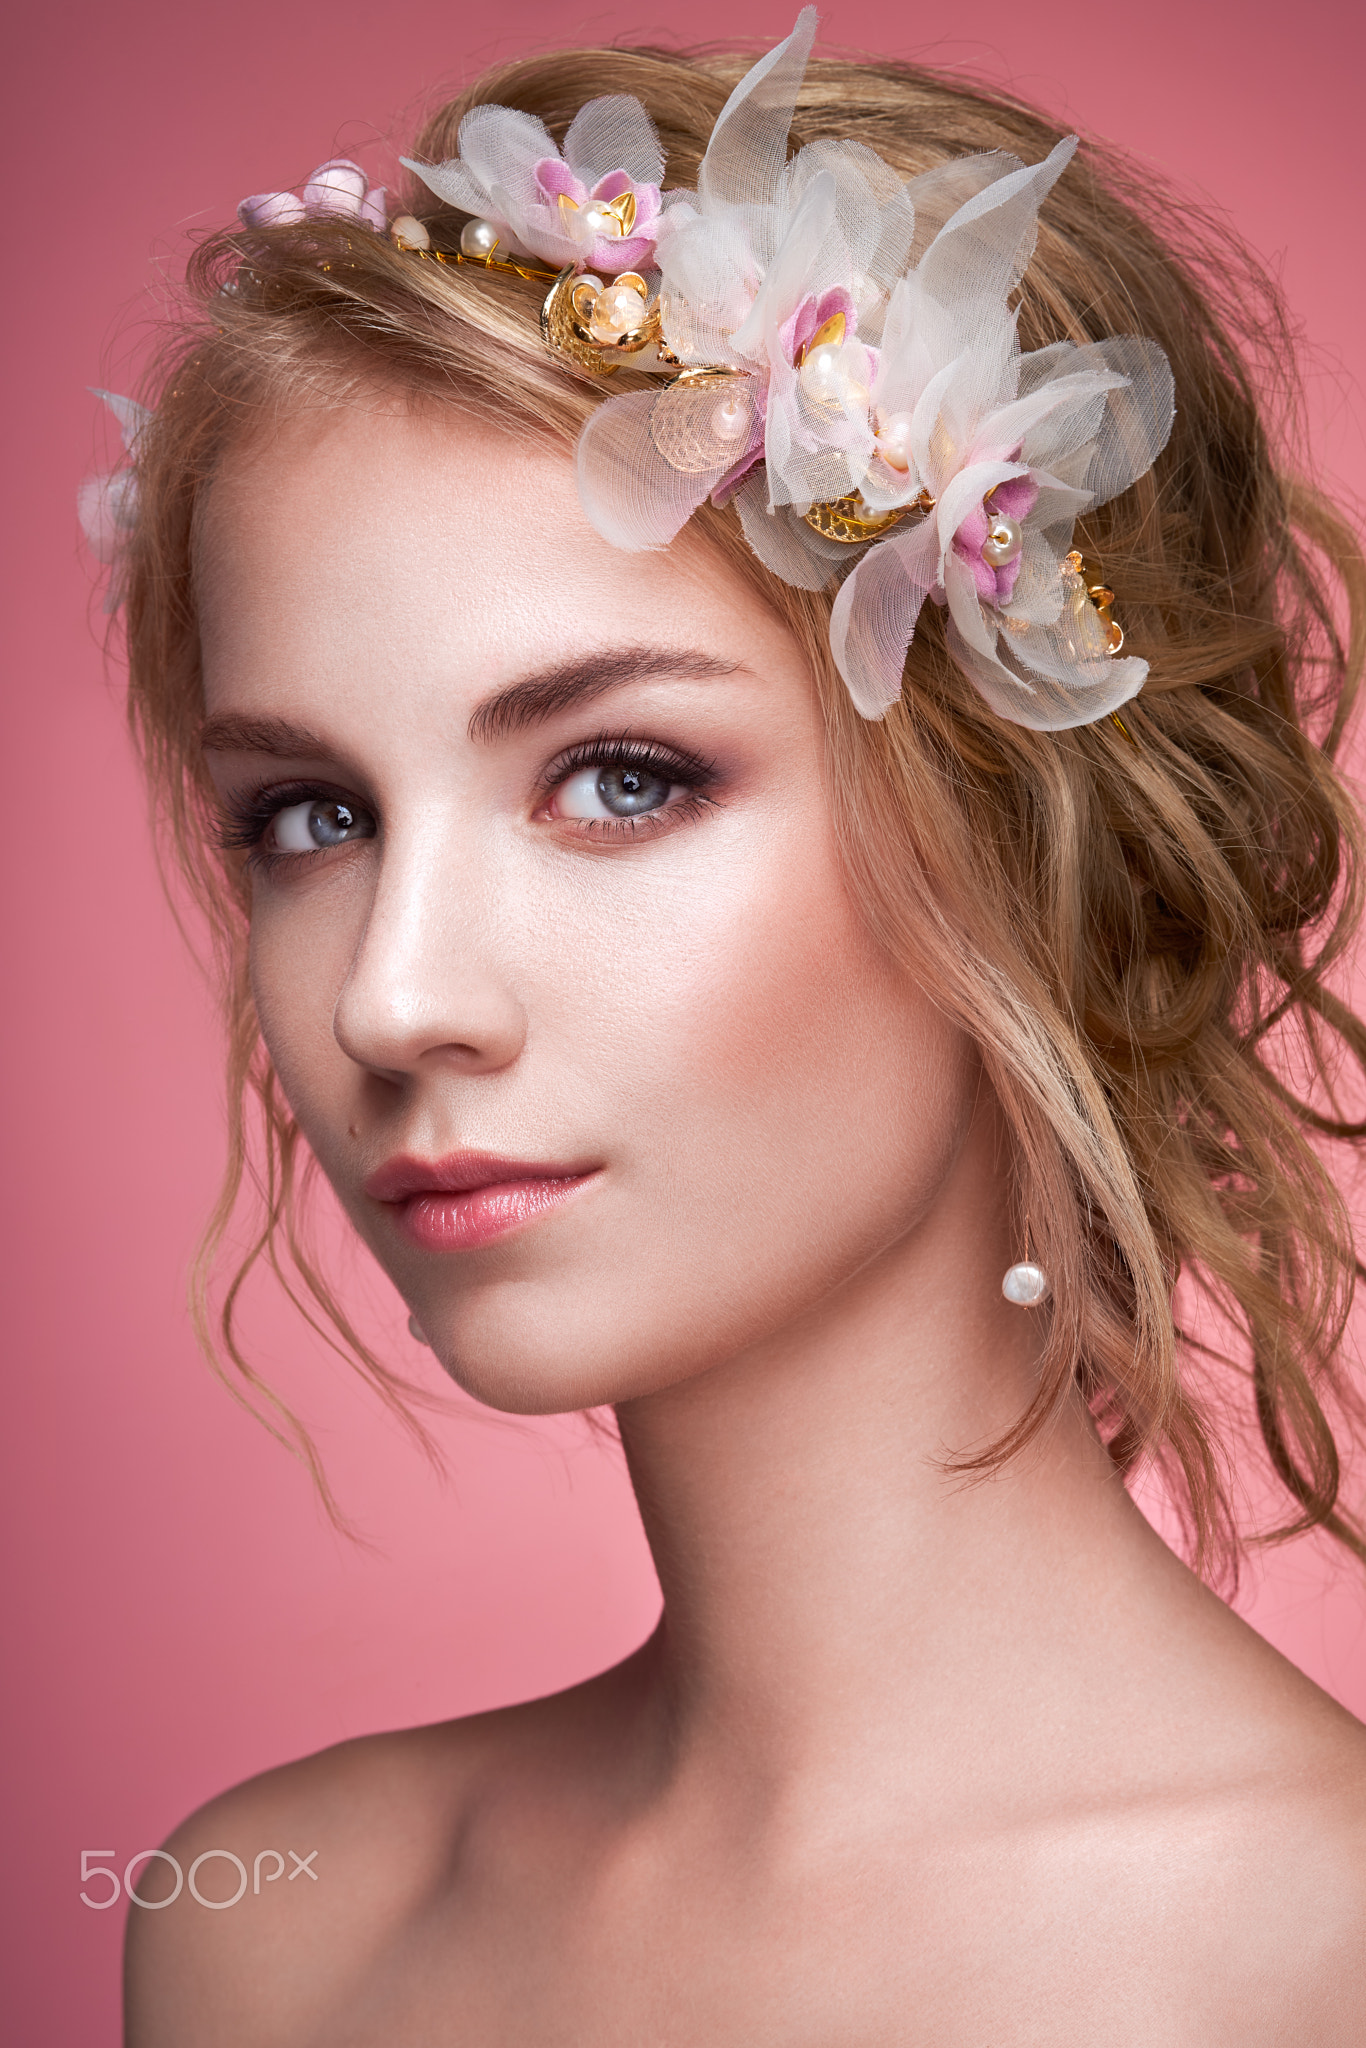 Oleg Gekman Women Portrait Glamour Makeup Eyeshadow Eyeliner Lipstick Blush Looking At Viewer Blonde 1366x2048